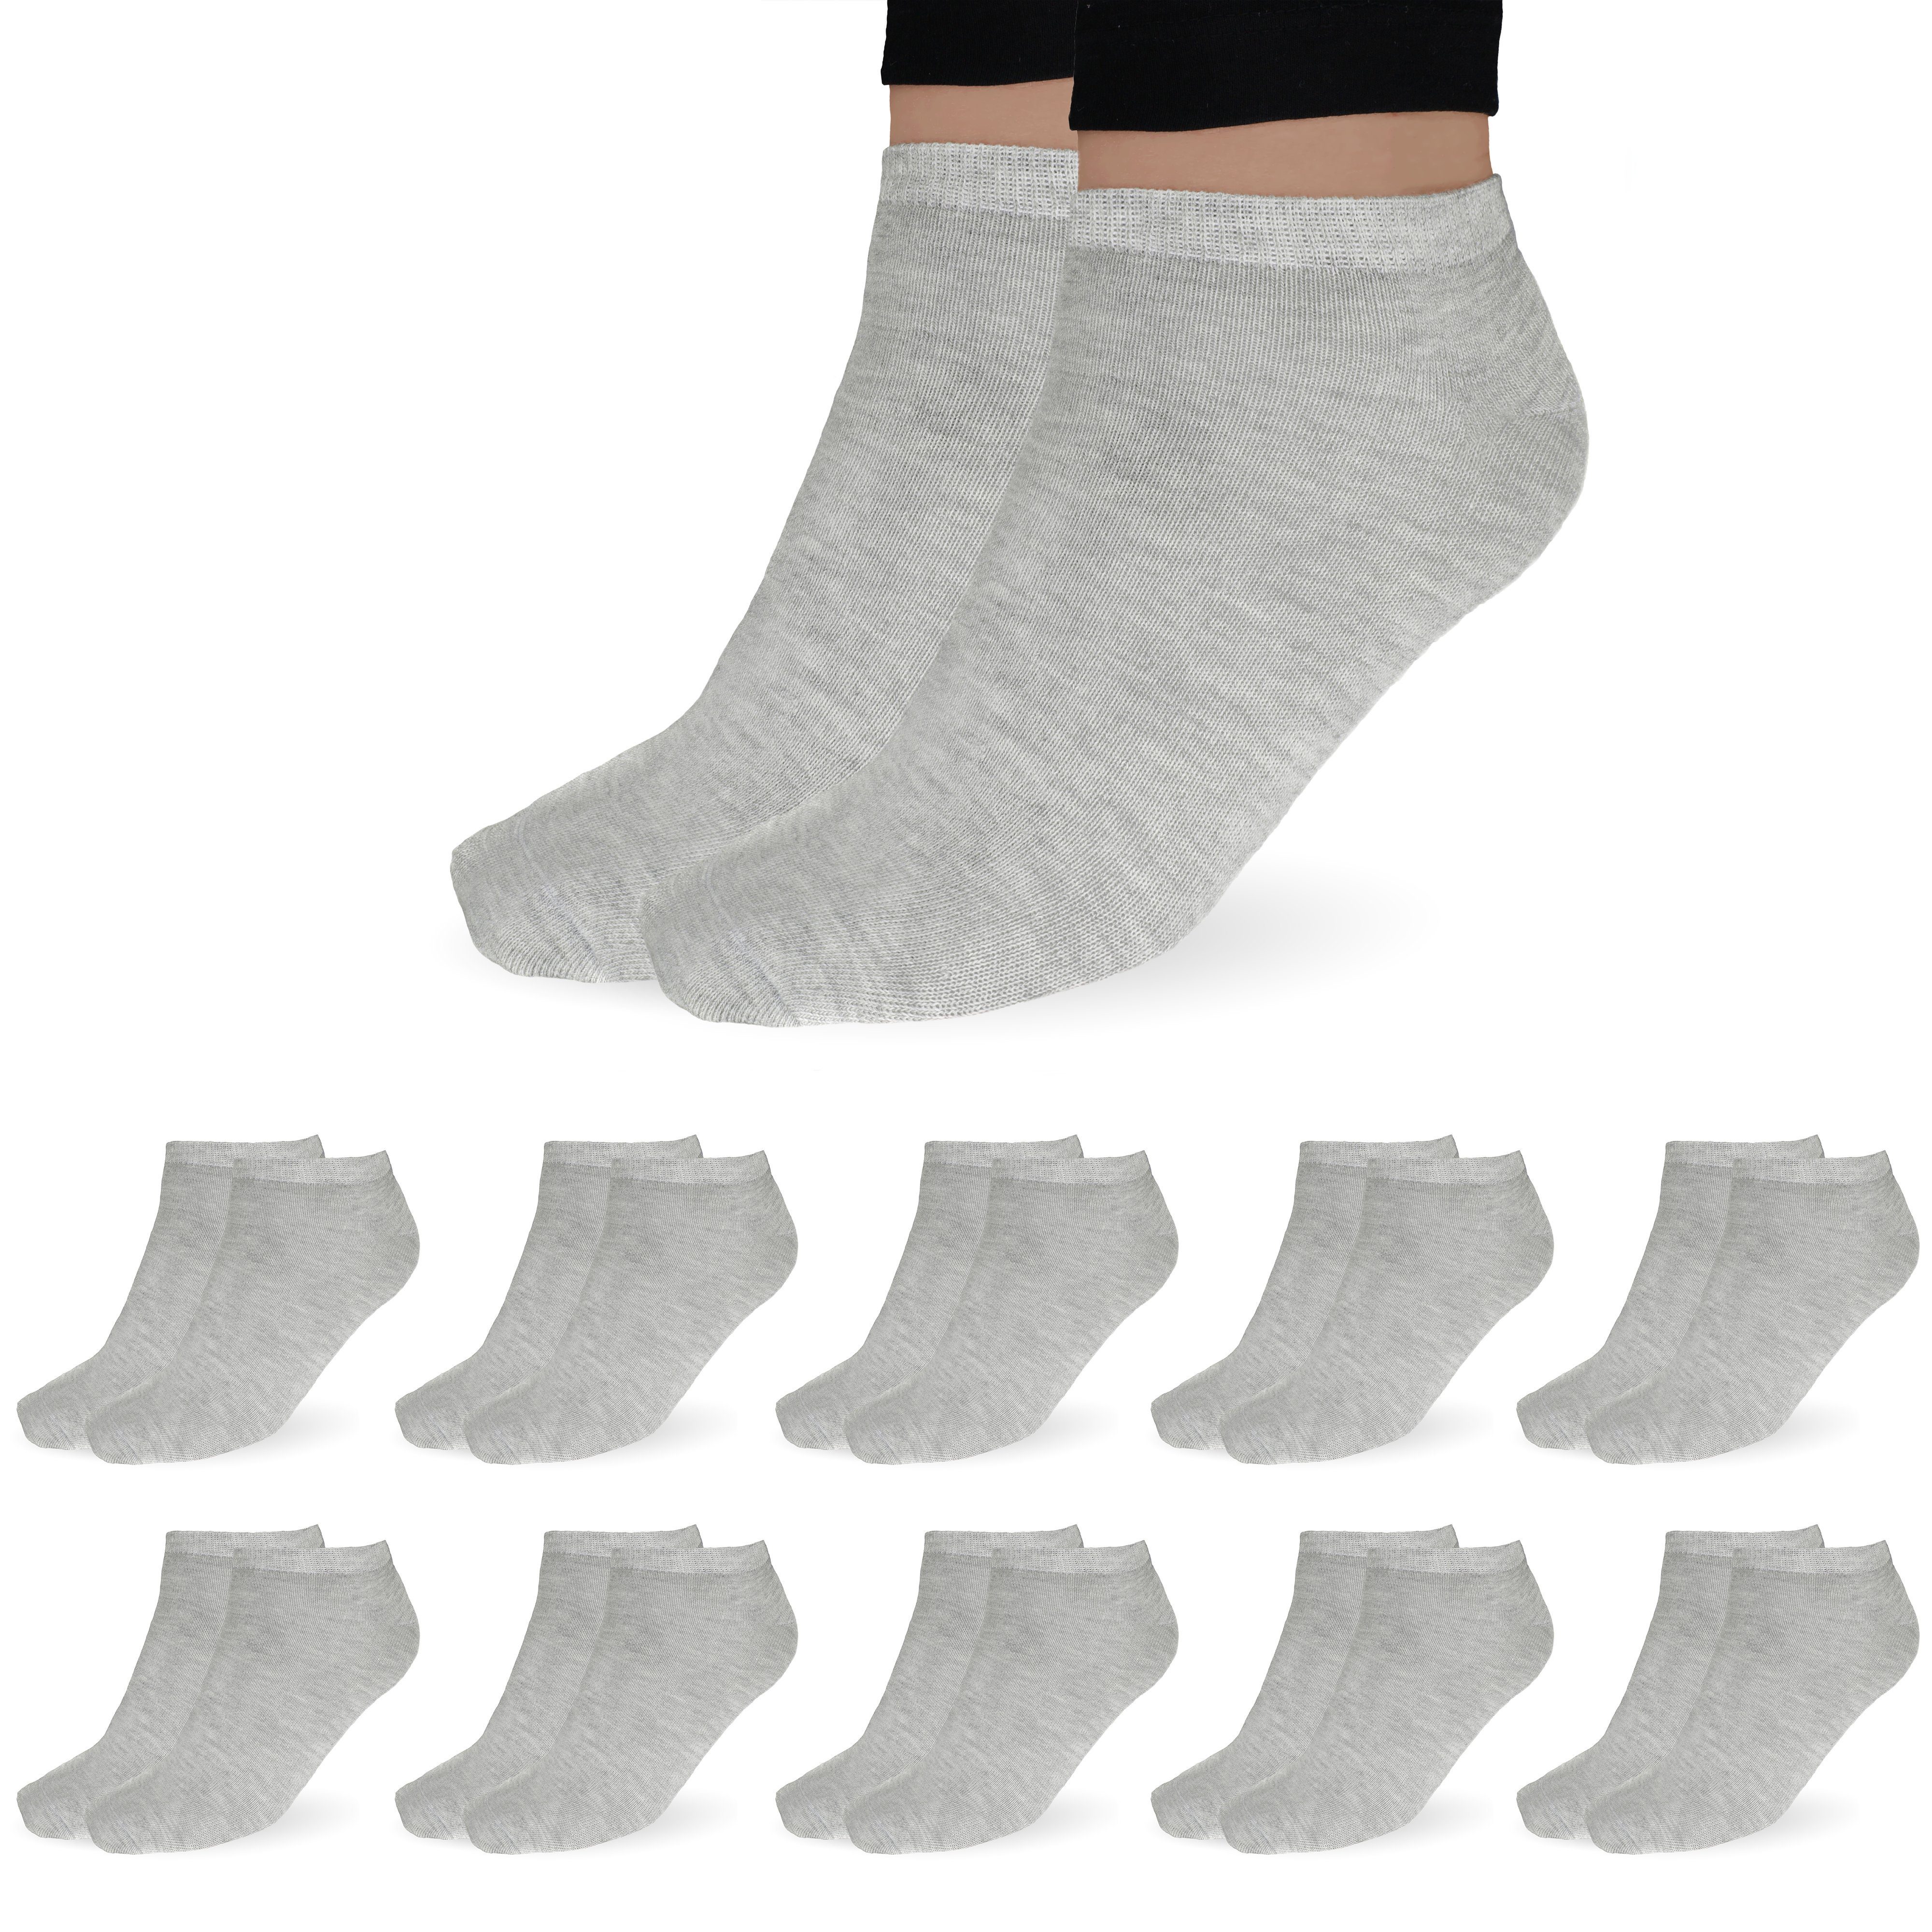 SO.I Freizeitsocken Sneaker Socken Damen & Herren aus Baumwolle (Größen 35-46, 5-20 Paar) atmungsaktive Unisex Socken 10x Grau